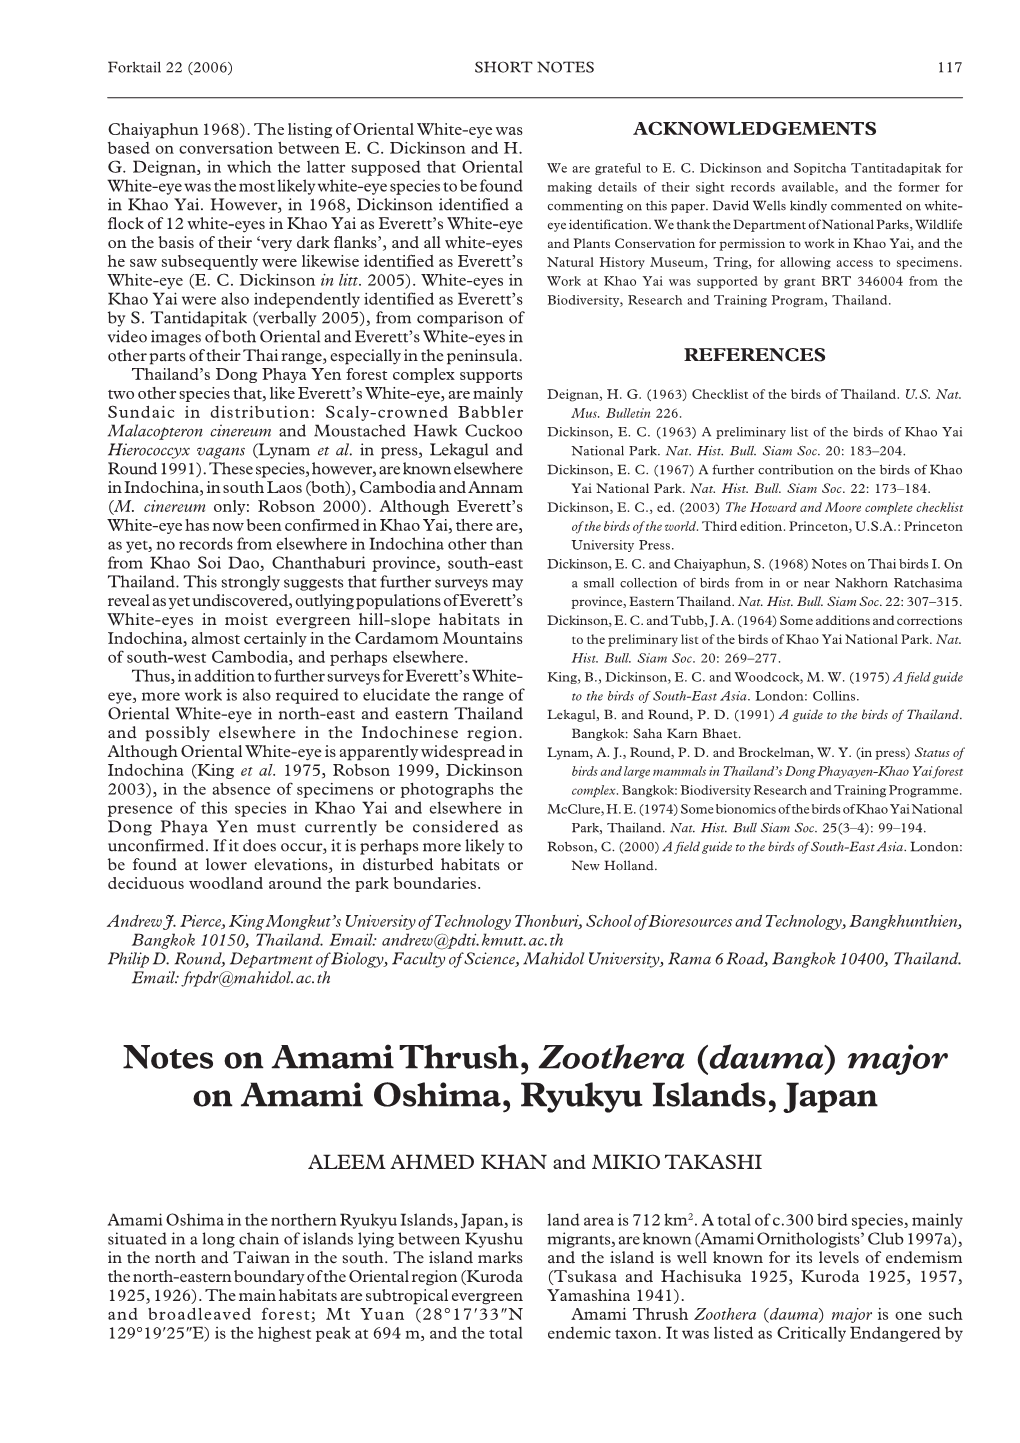 Notes on Amami Thrush, Zoothera (Dauma) Major on Amami Oshima, Ryukyu Islands, Japan